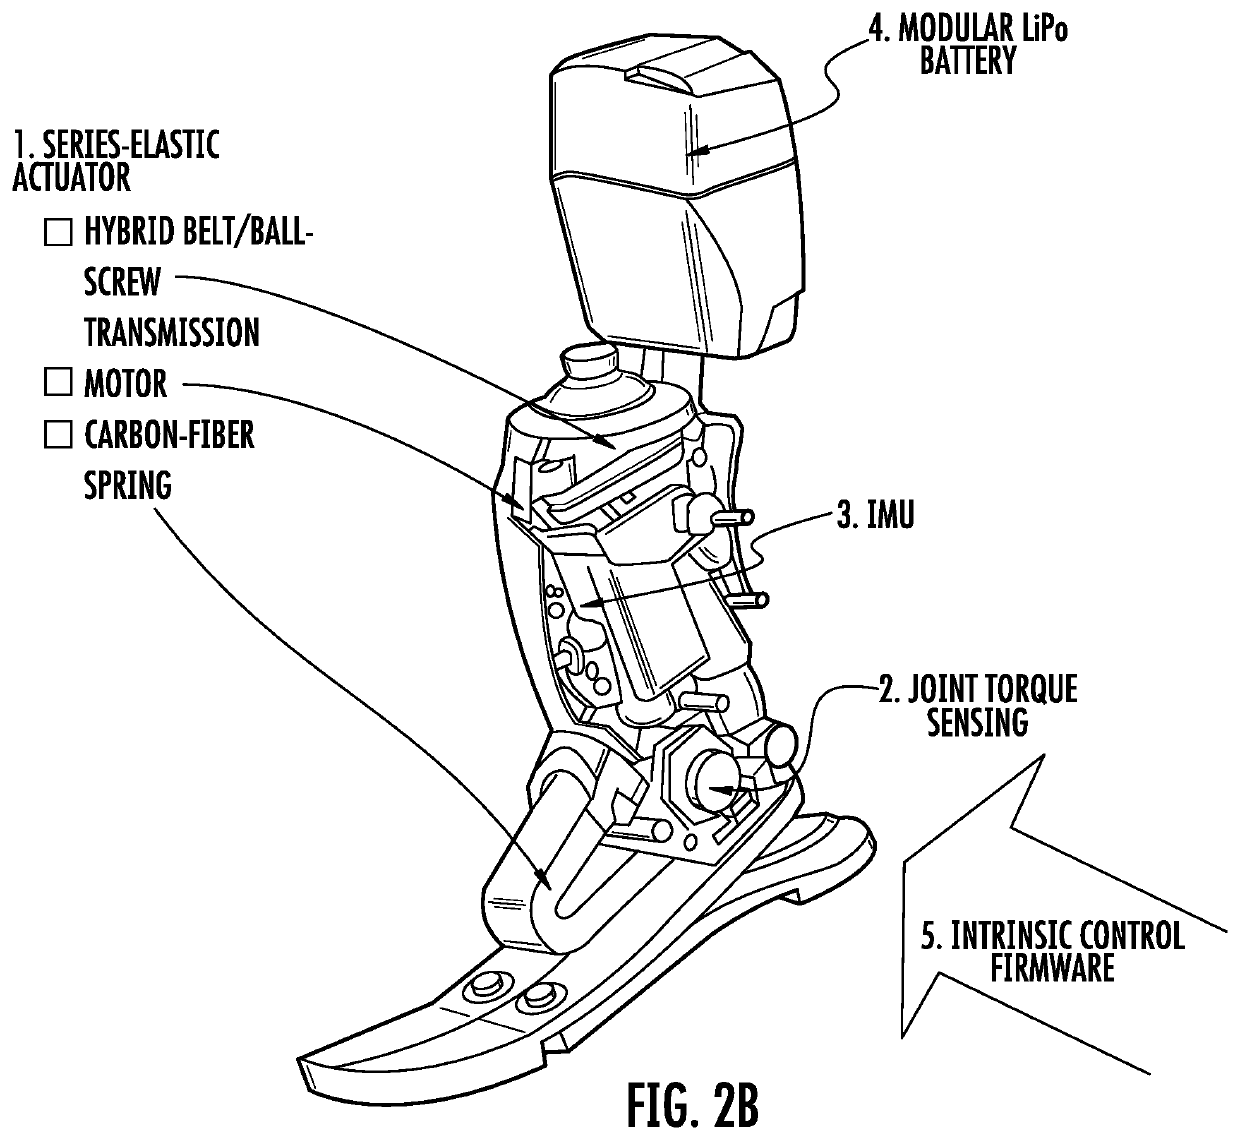 Prosthetic, orthotic or exoskeleton device